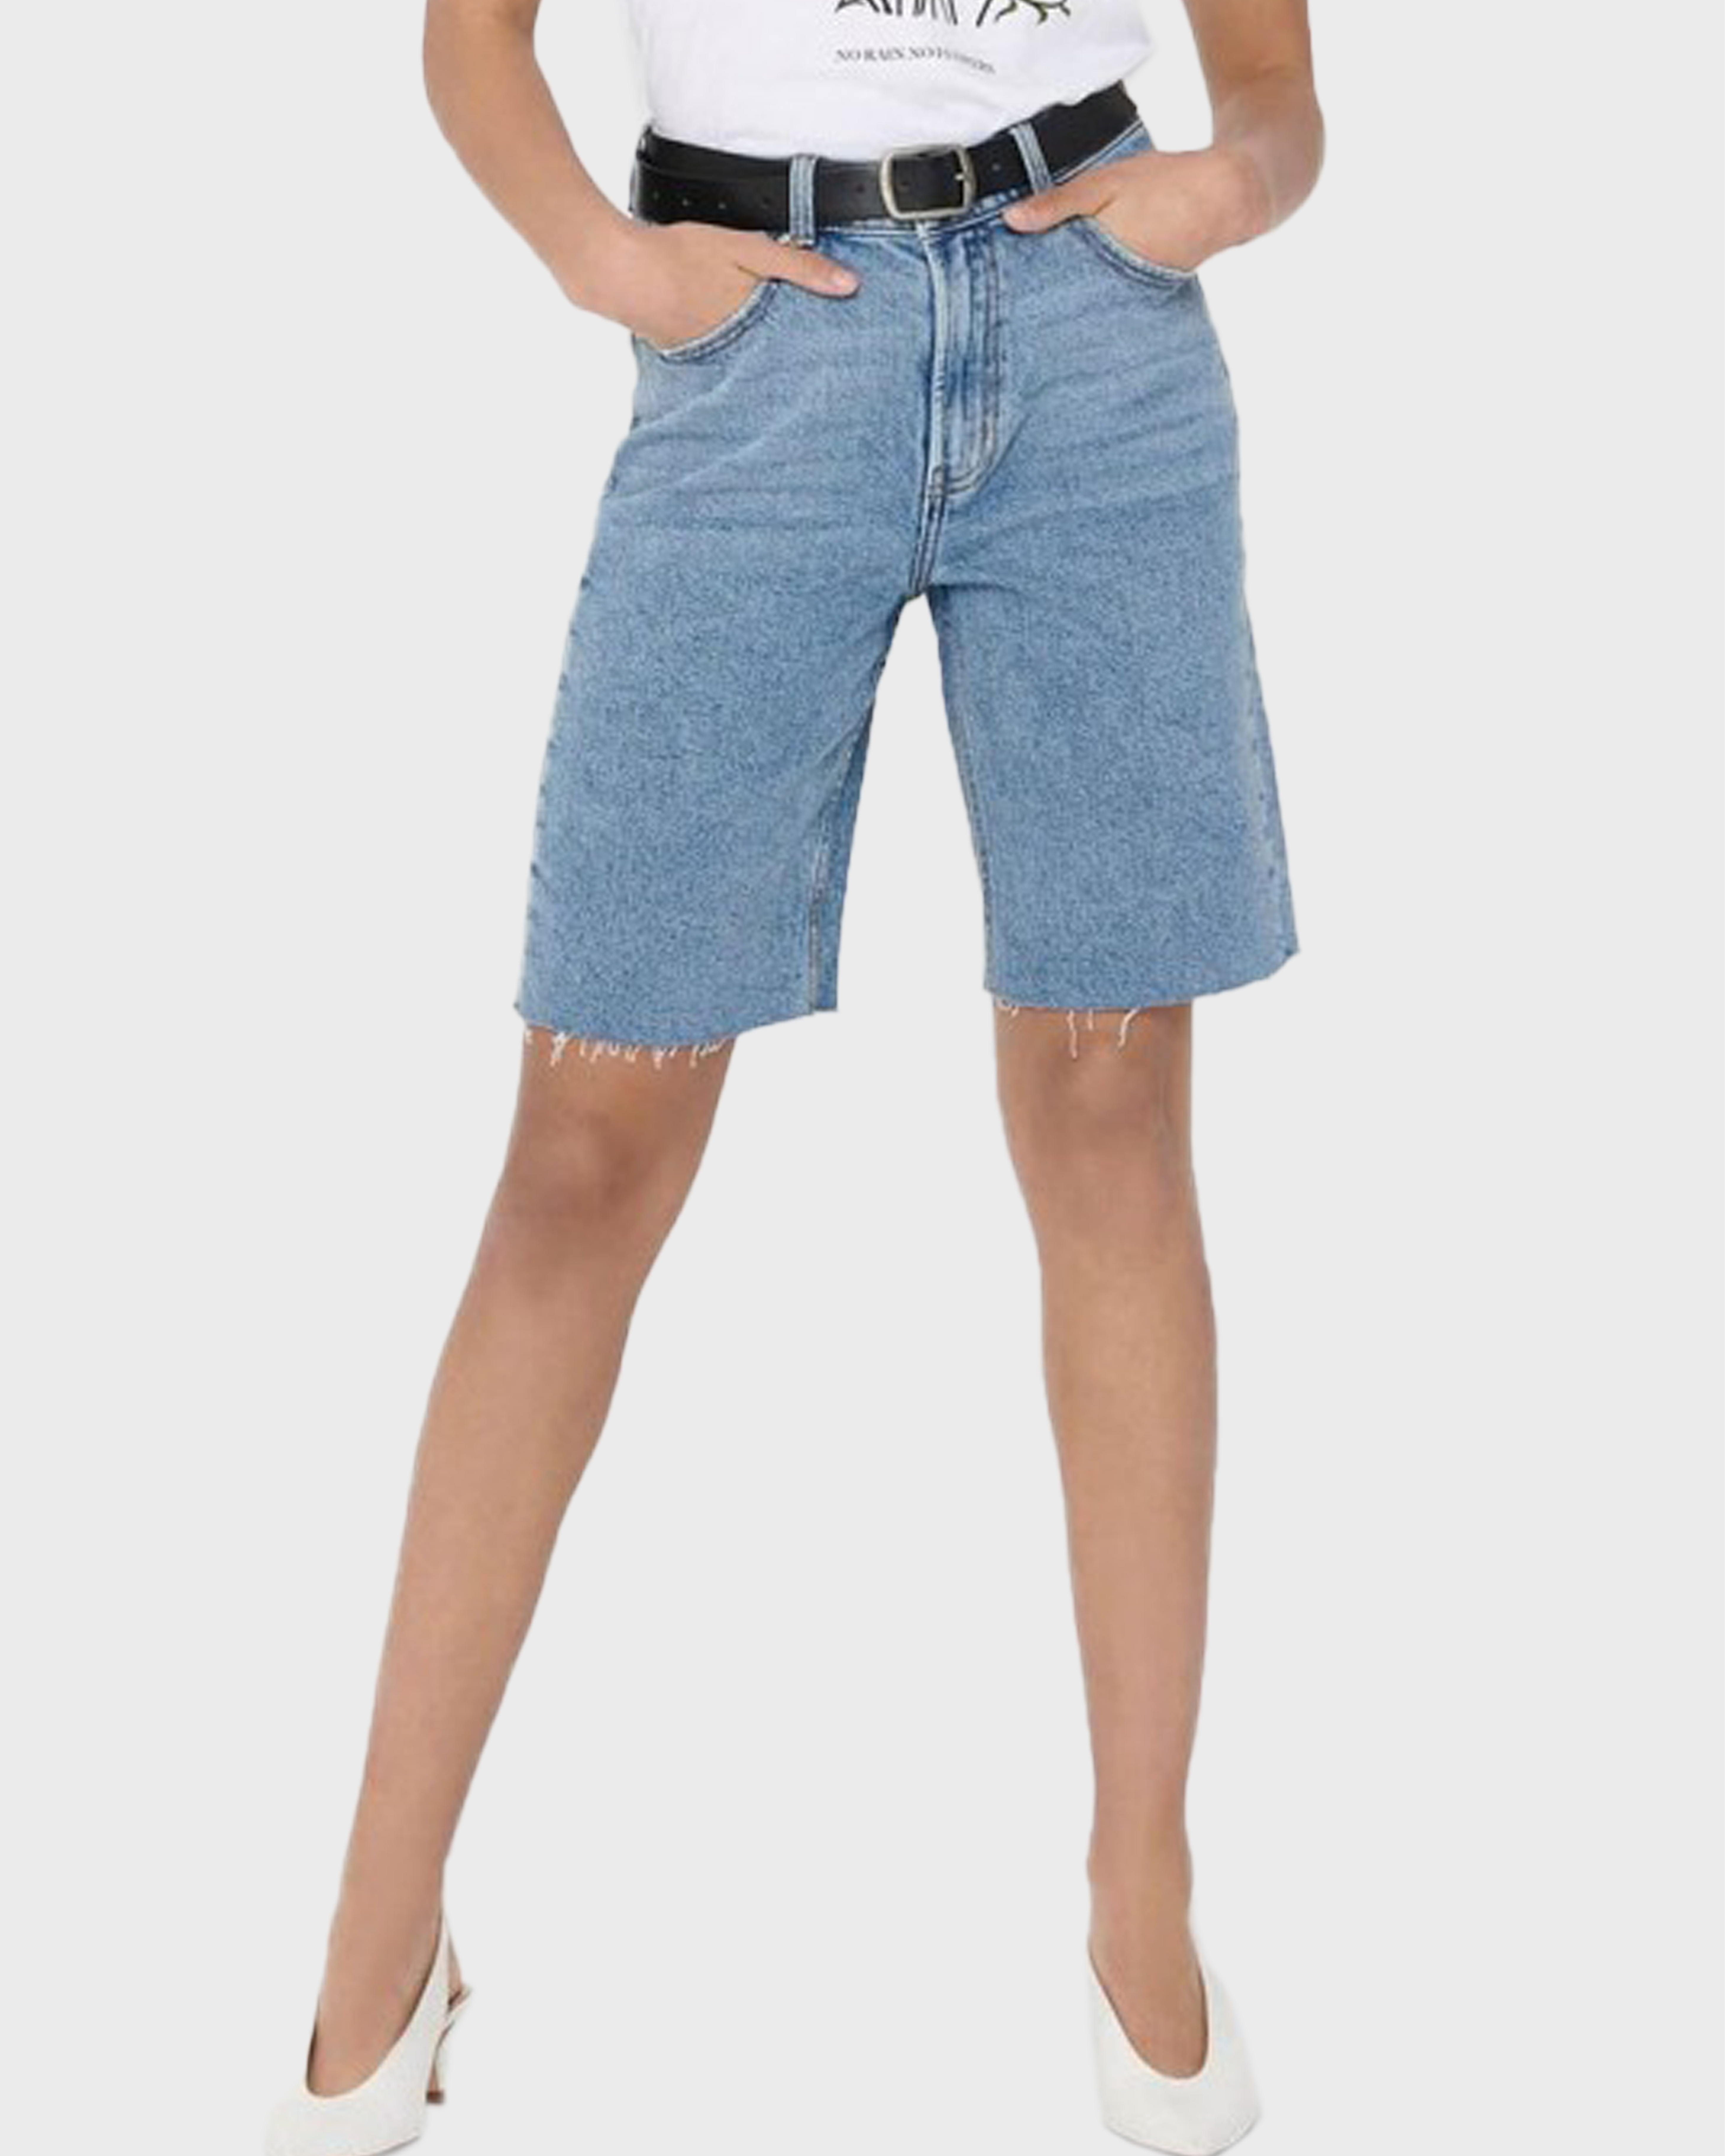 Удлиненные джинсовые шорты. Джинсовые шорты. Шорты женские удлиненные. Джинсовые шорты женские. Джинсовые бермуды женские.